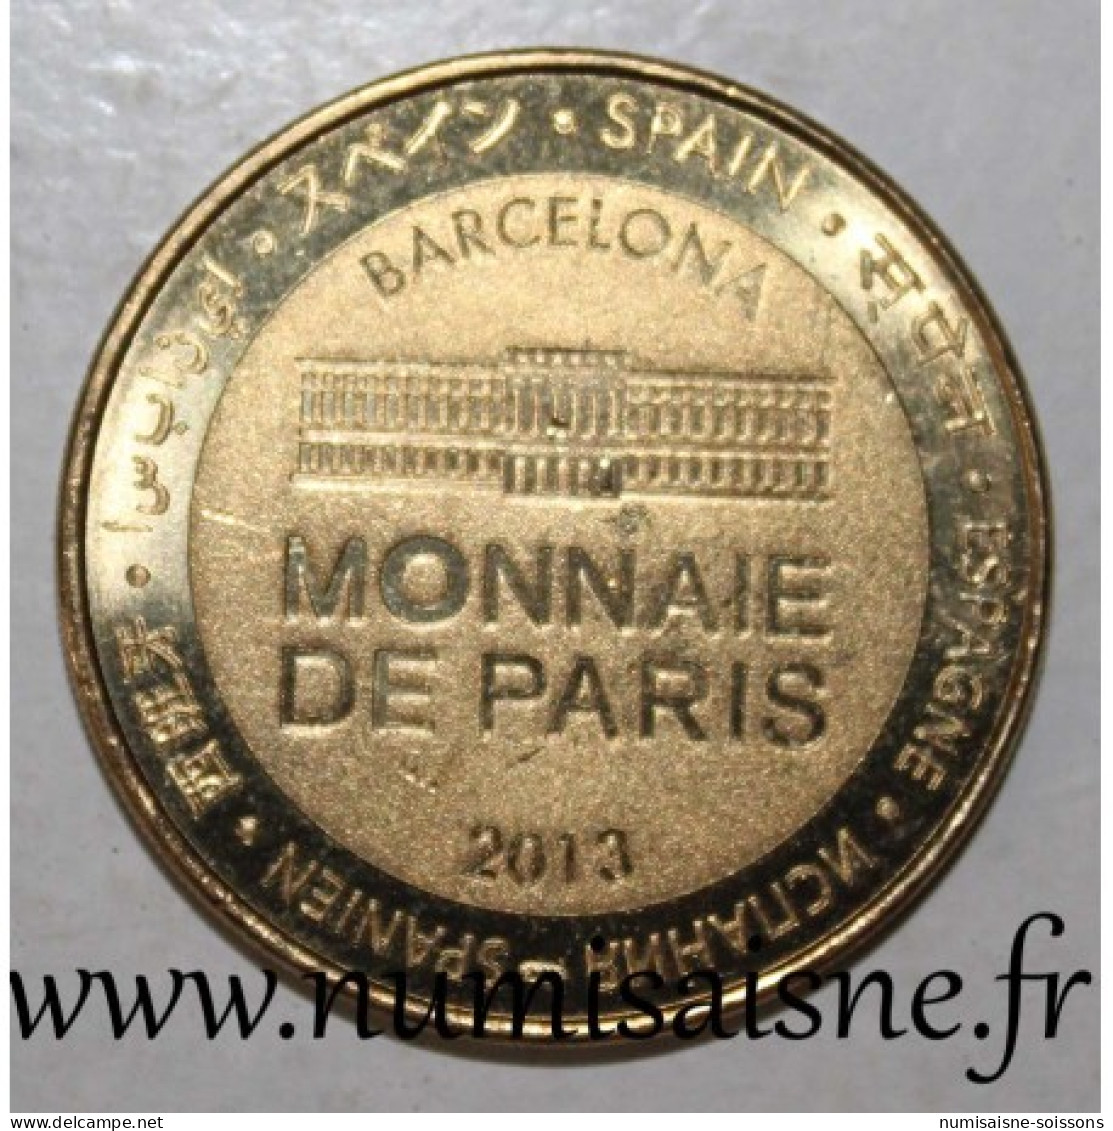 ESPAGNE - BARCELONE - FCB - CAMP NOU - Monnaie De Paris - 2013 - 2013